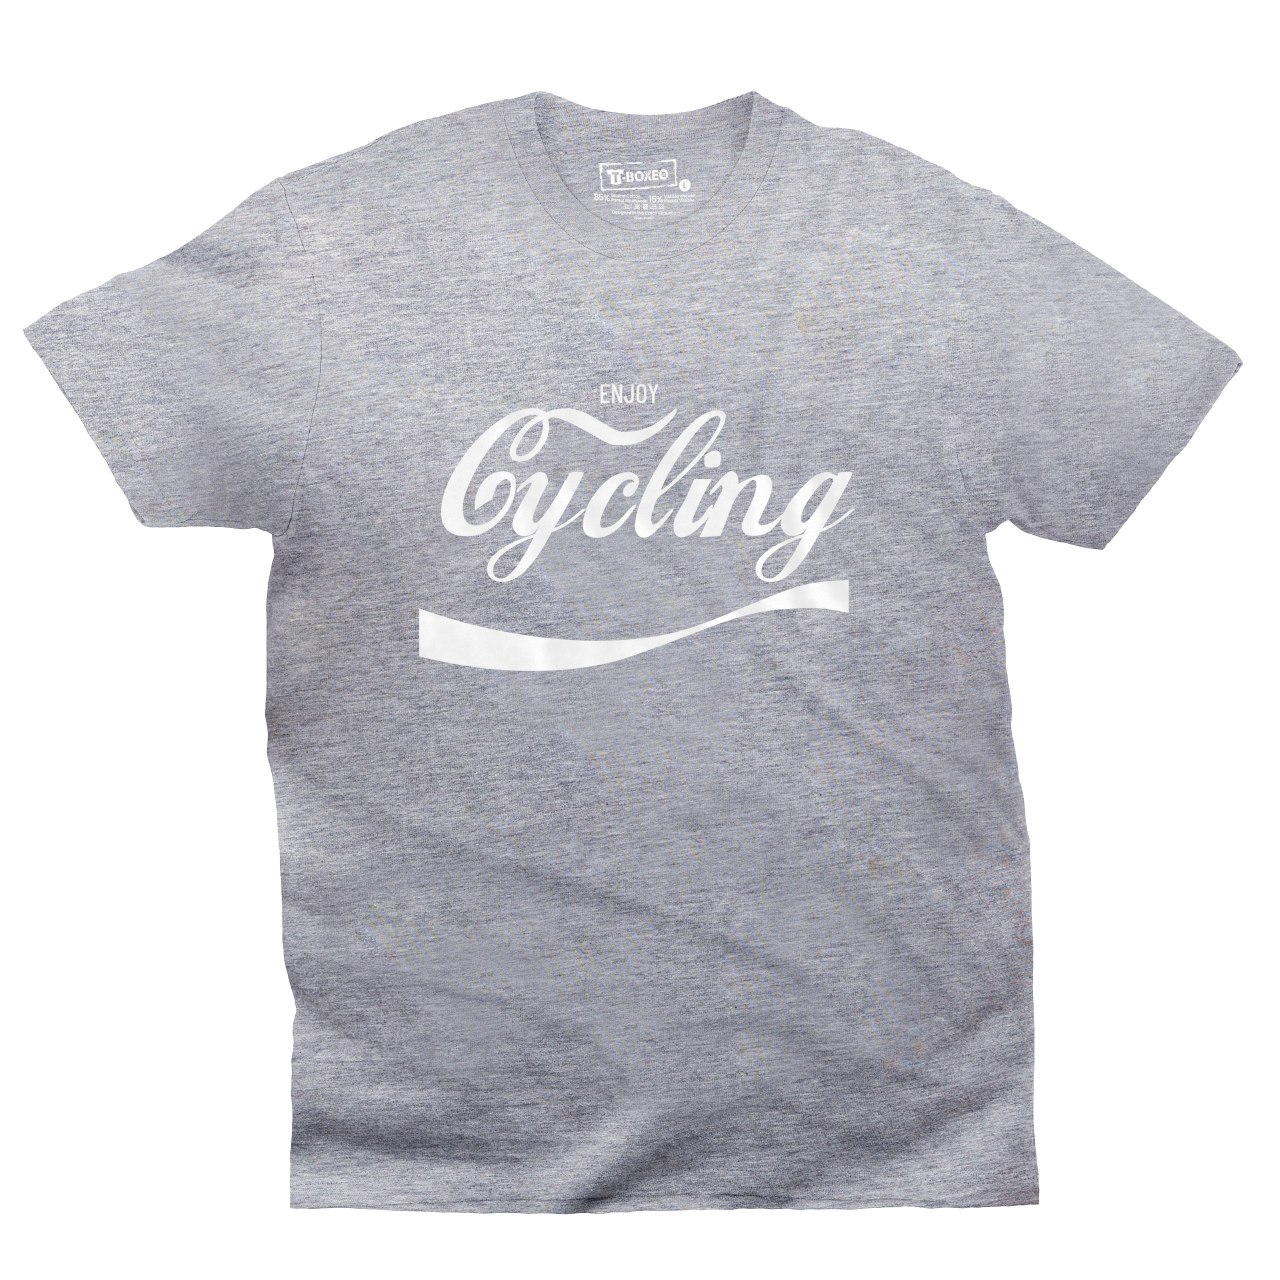 Pánské tričko s potiskem "Enjoy Cycling"